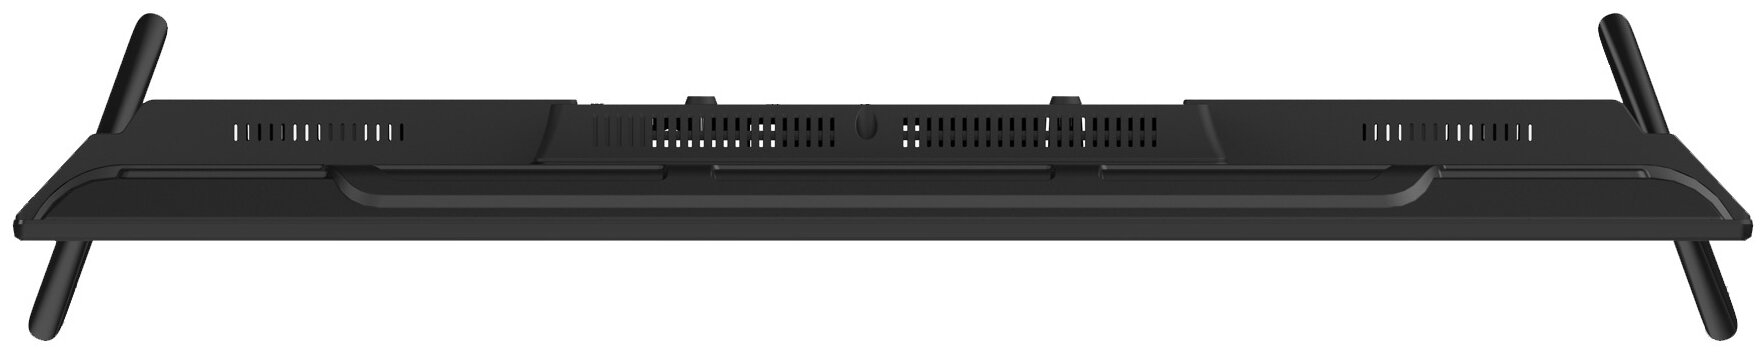 42" Hyundai H-LED42FT3003 LED - разъемы и интерфейсы: композитный видеовход, вход HDMI x 3, USB Type-A x 2, слот CI/CI+, выход аудио коаксиальный